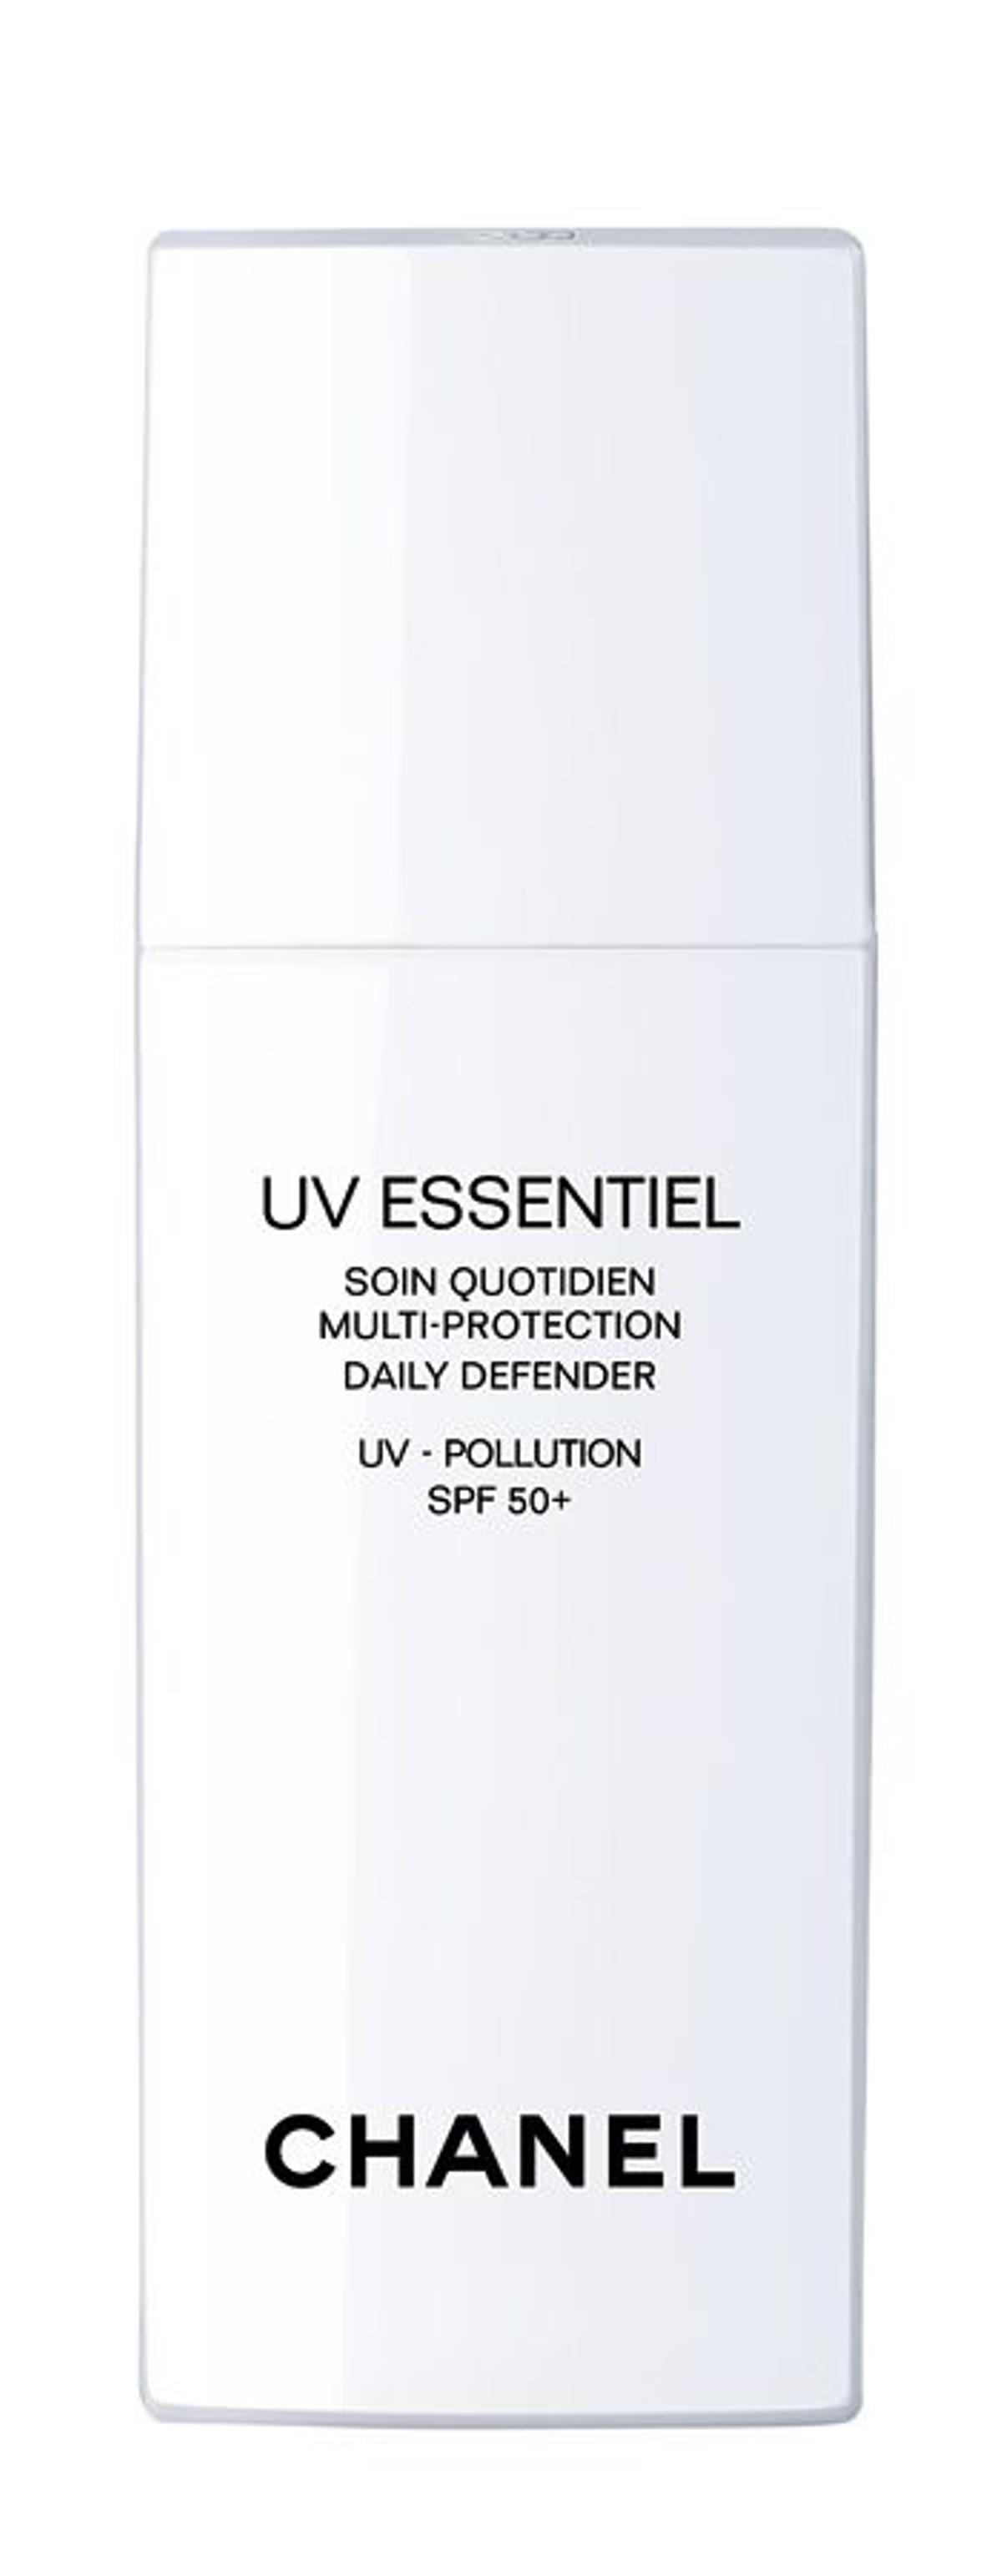 Oxígeno, manual de uso: UV Essentiel, de Chanel